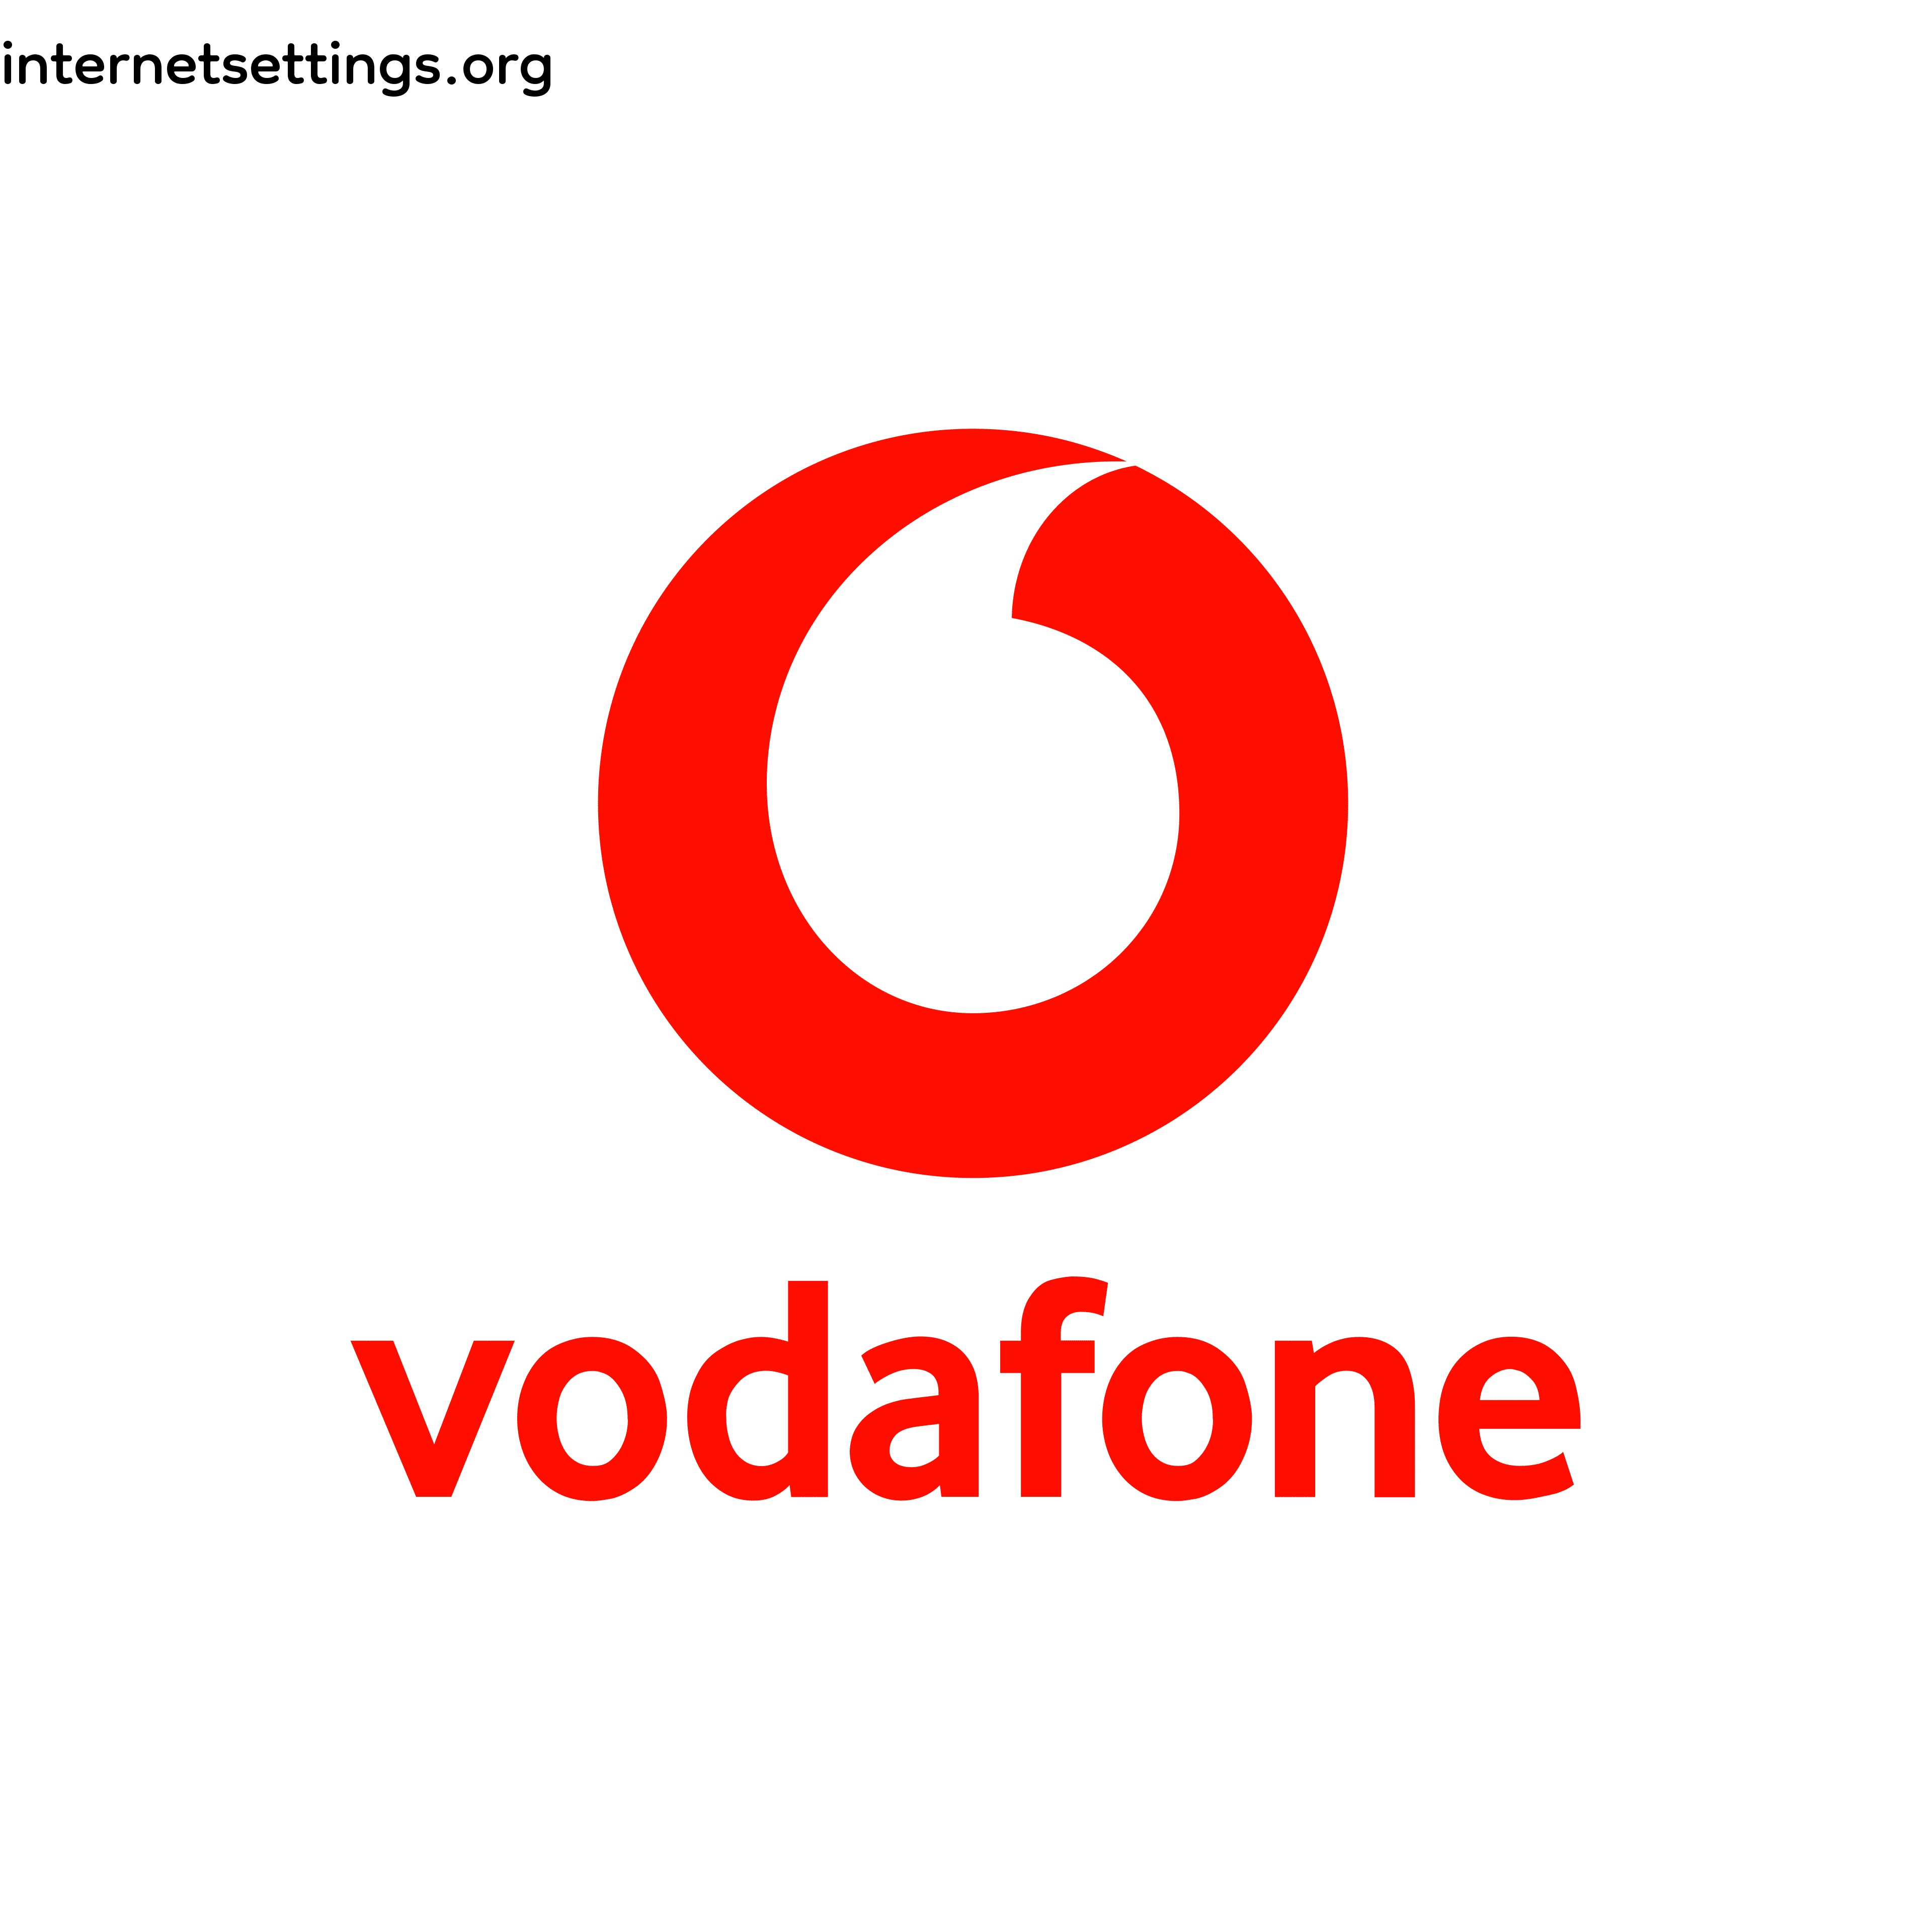 Vodafone Australia (TPG Telecom Australia)